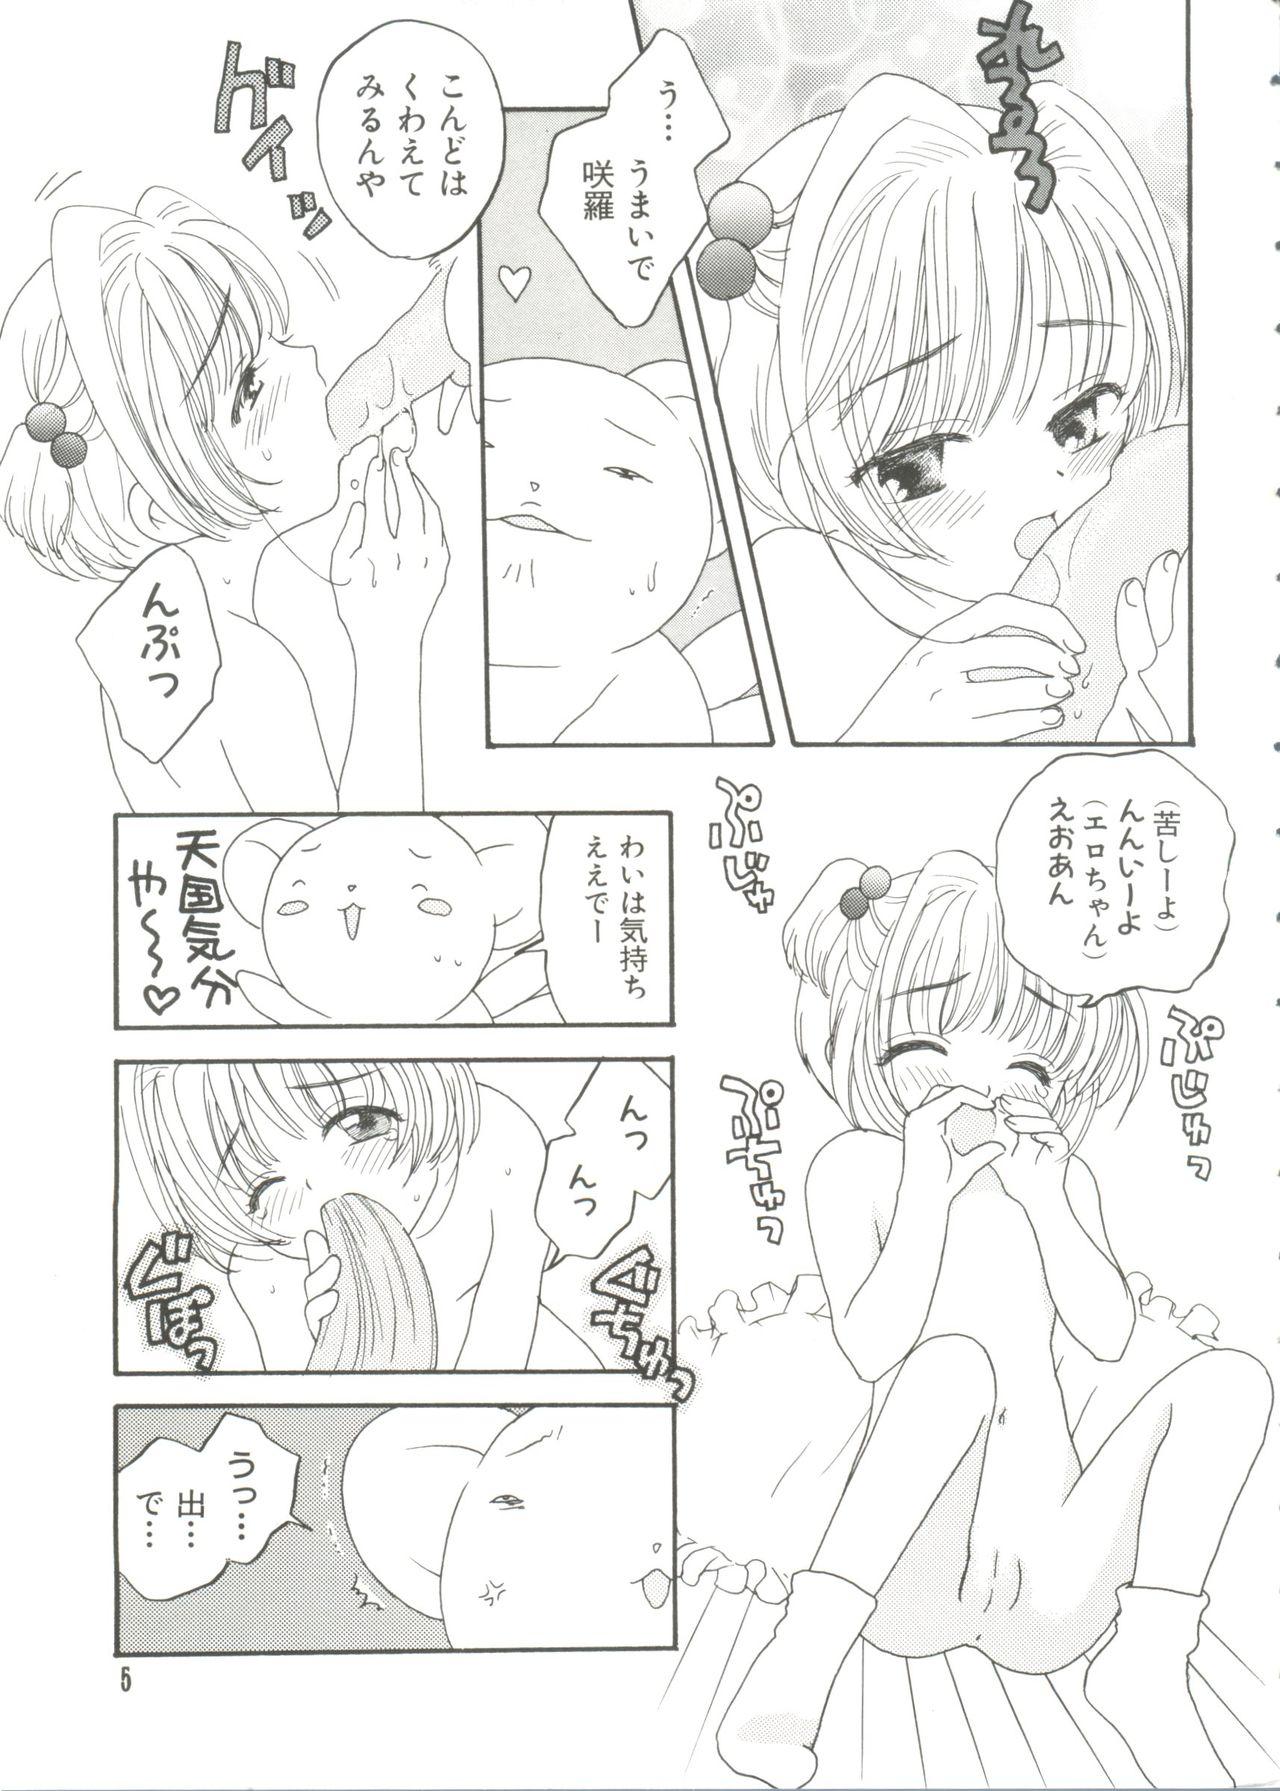 Gemendo Paro Paro Oukoku 4 - Cardcaptor sakura Tributo - Page 5